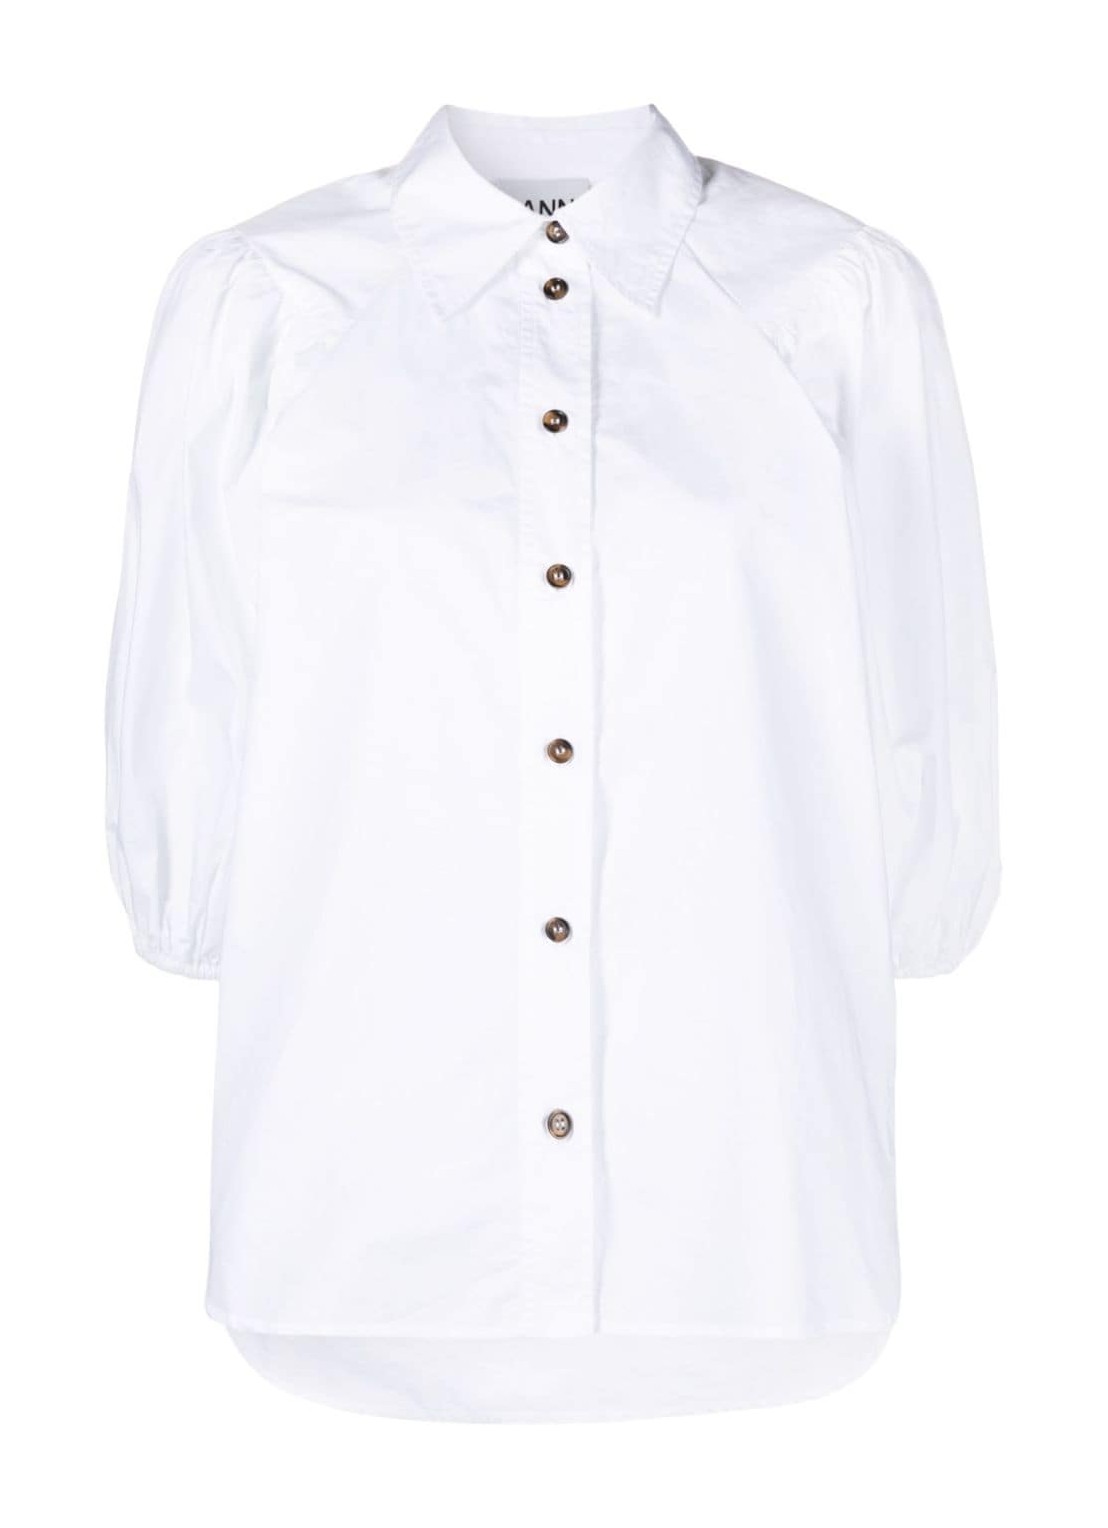 Camiseria ganni shirt woman cotton poplin shirt f8881 151 talla 42
 